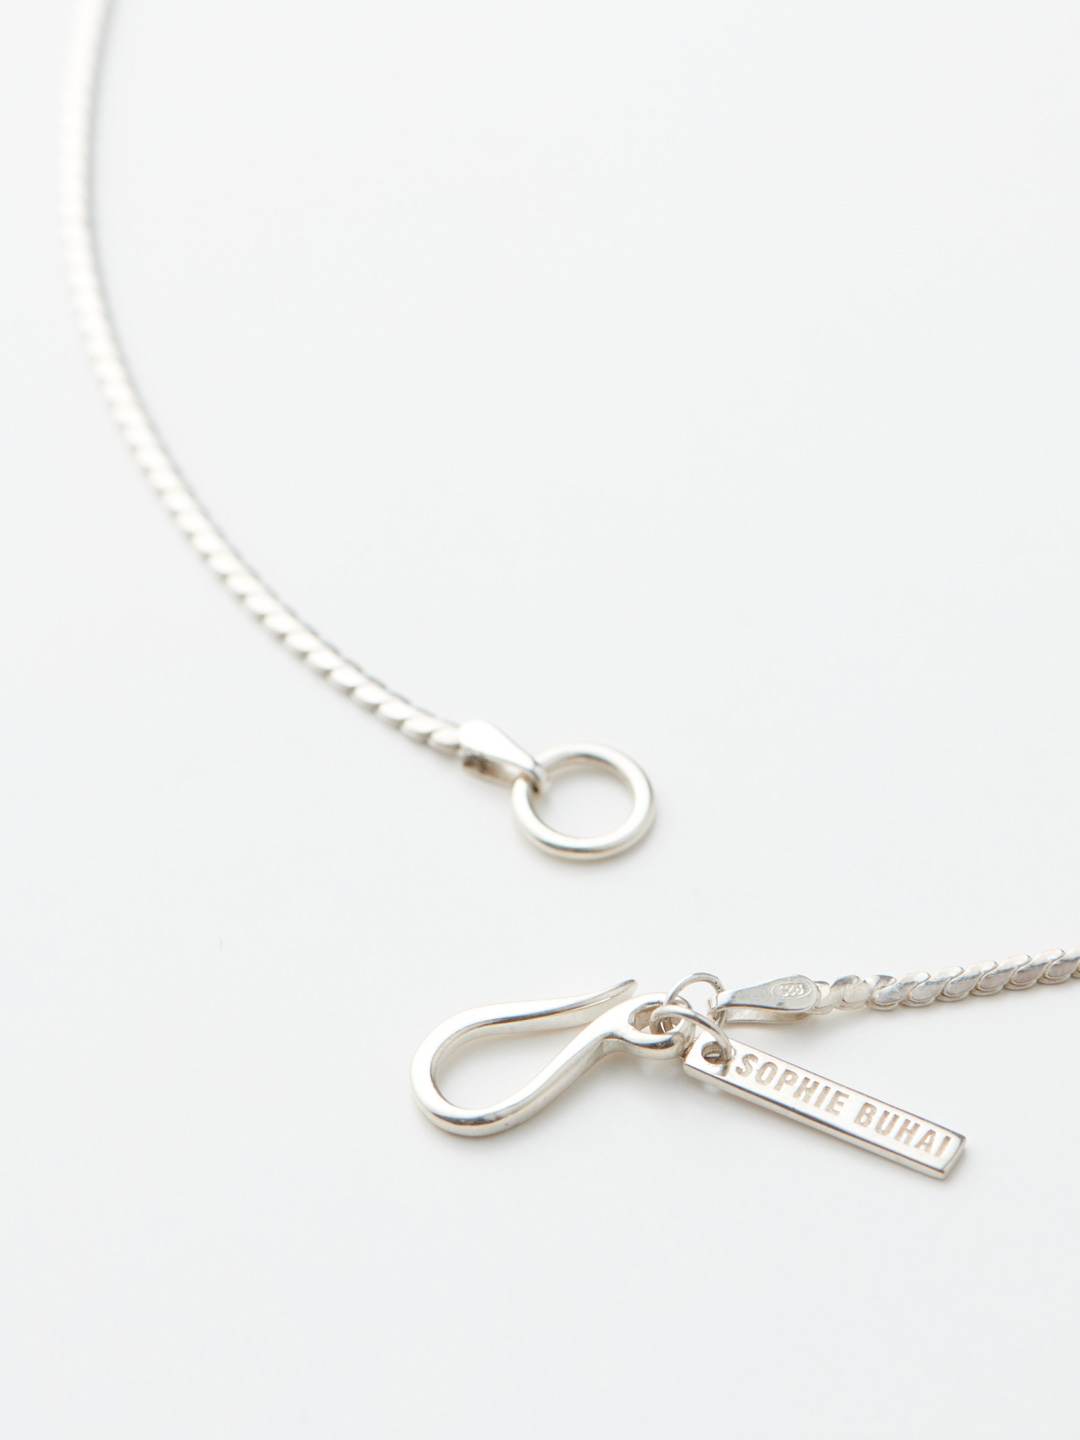 Ada Chain Necklace 35cm - Silver